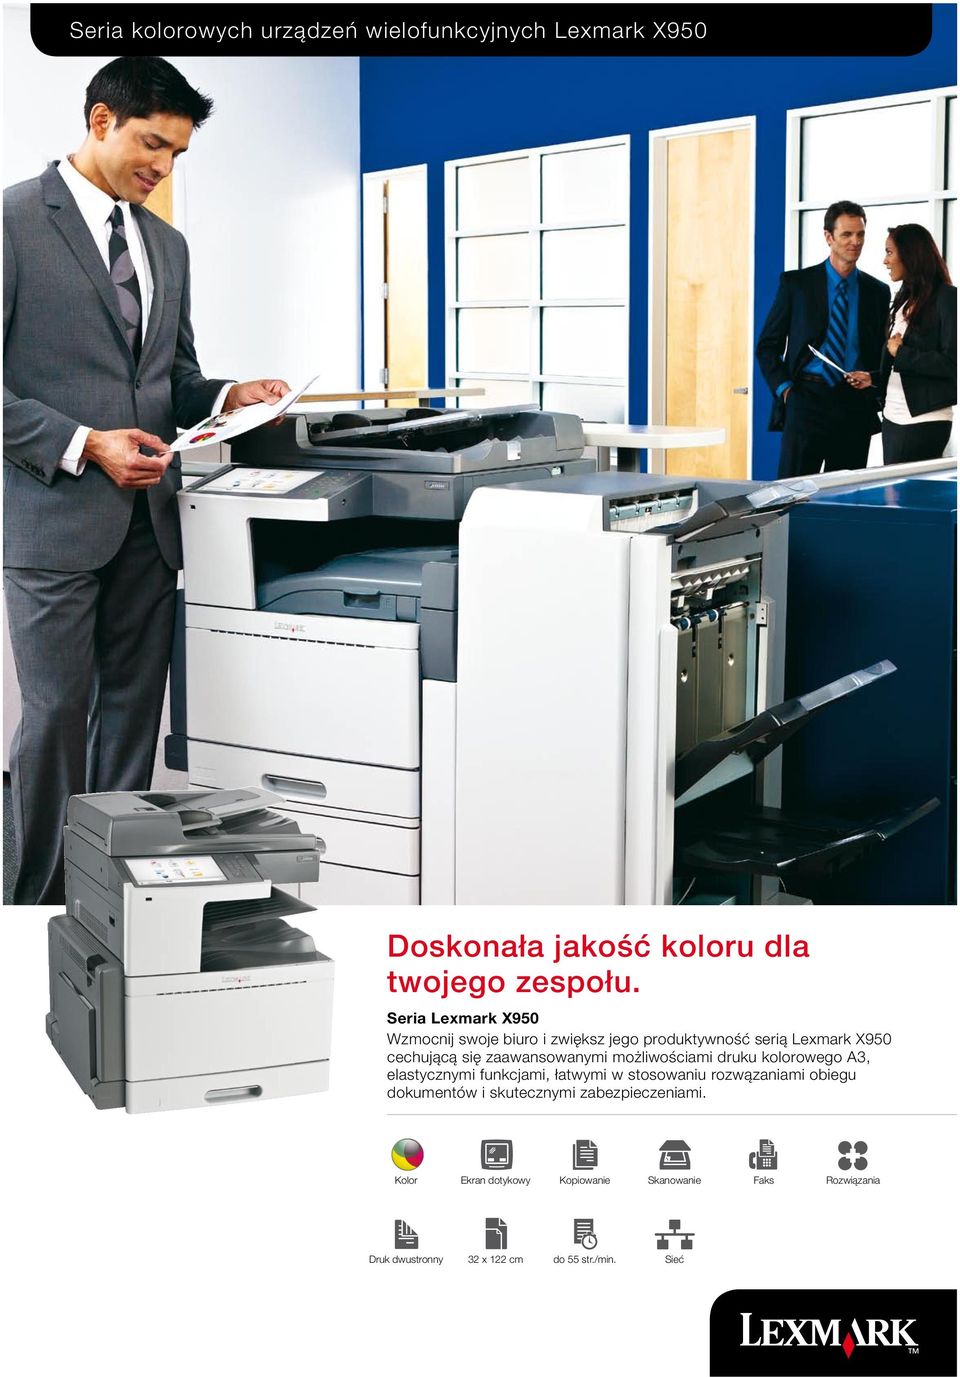 możliwościami druku kolorowego A3, elastycznymi funkcjami, łatwymi w stosowaniu rozwązaniami obiegu dokumentów i